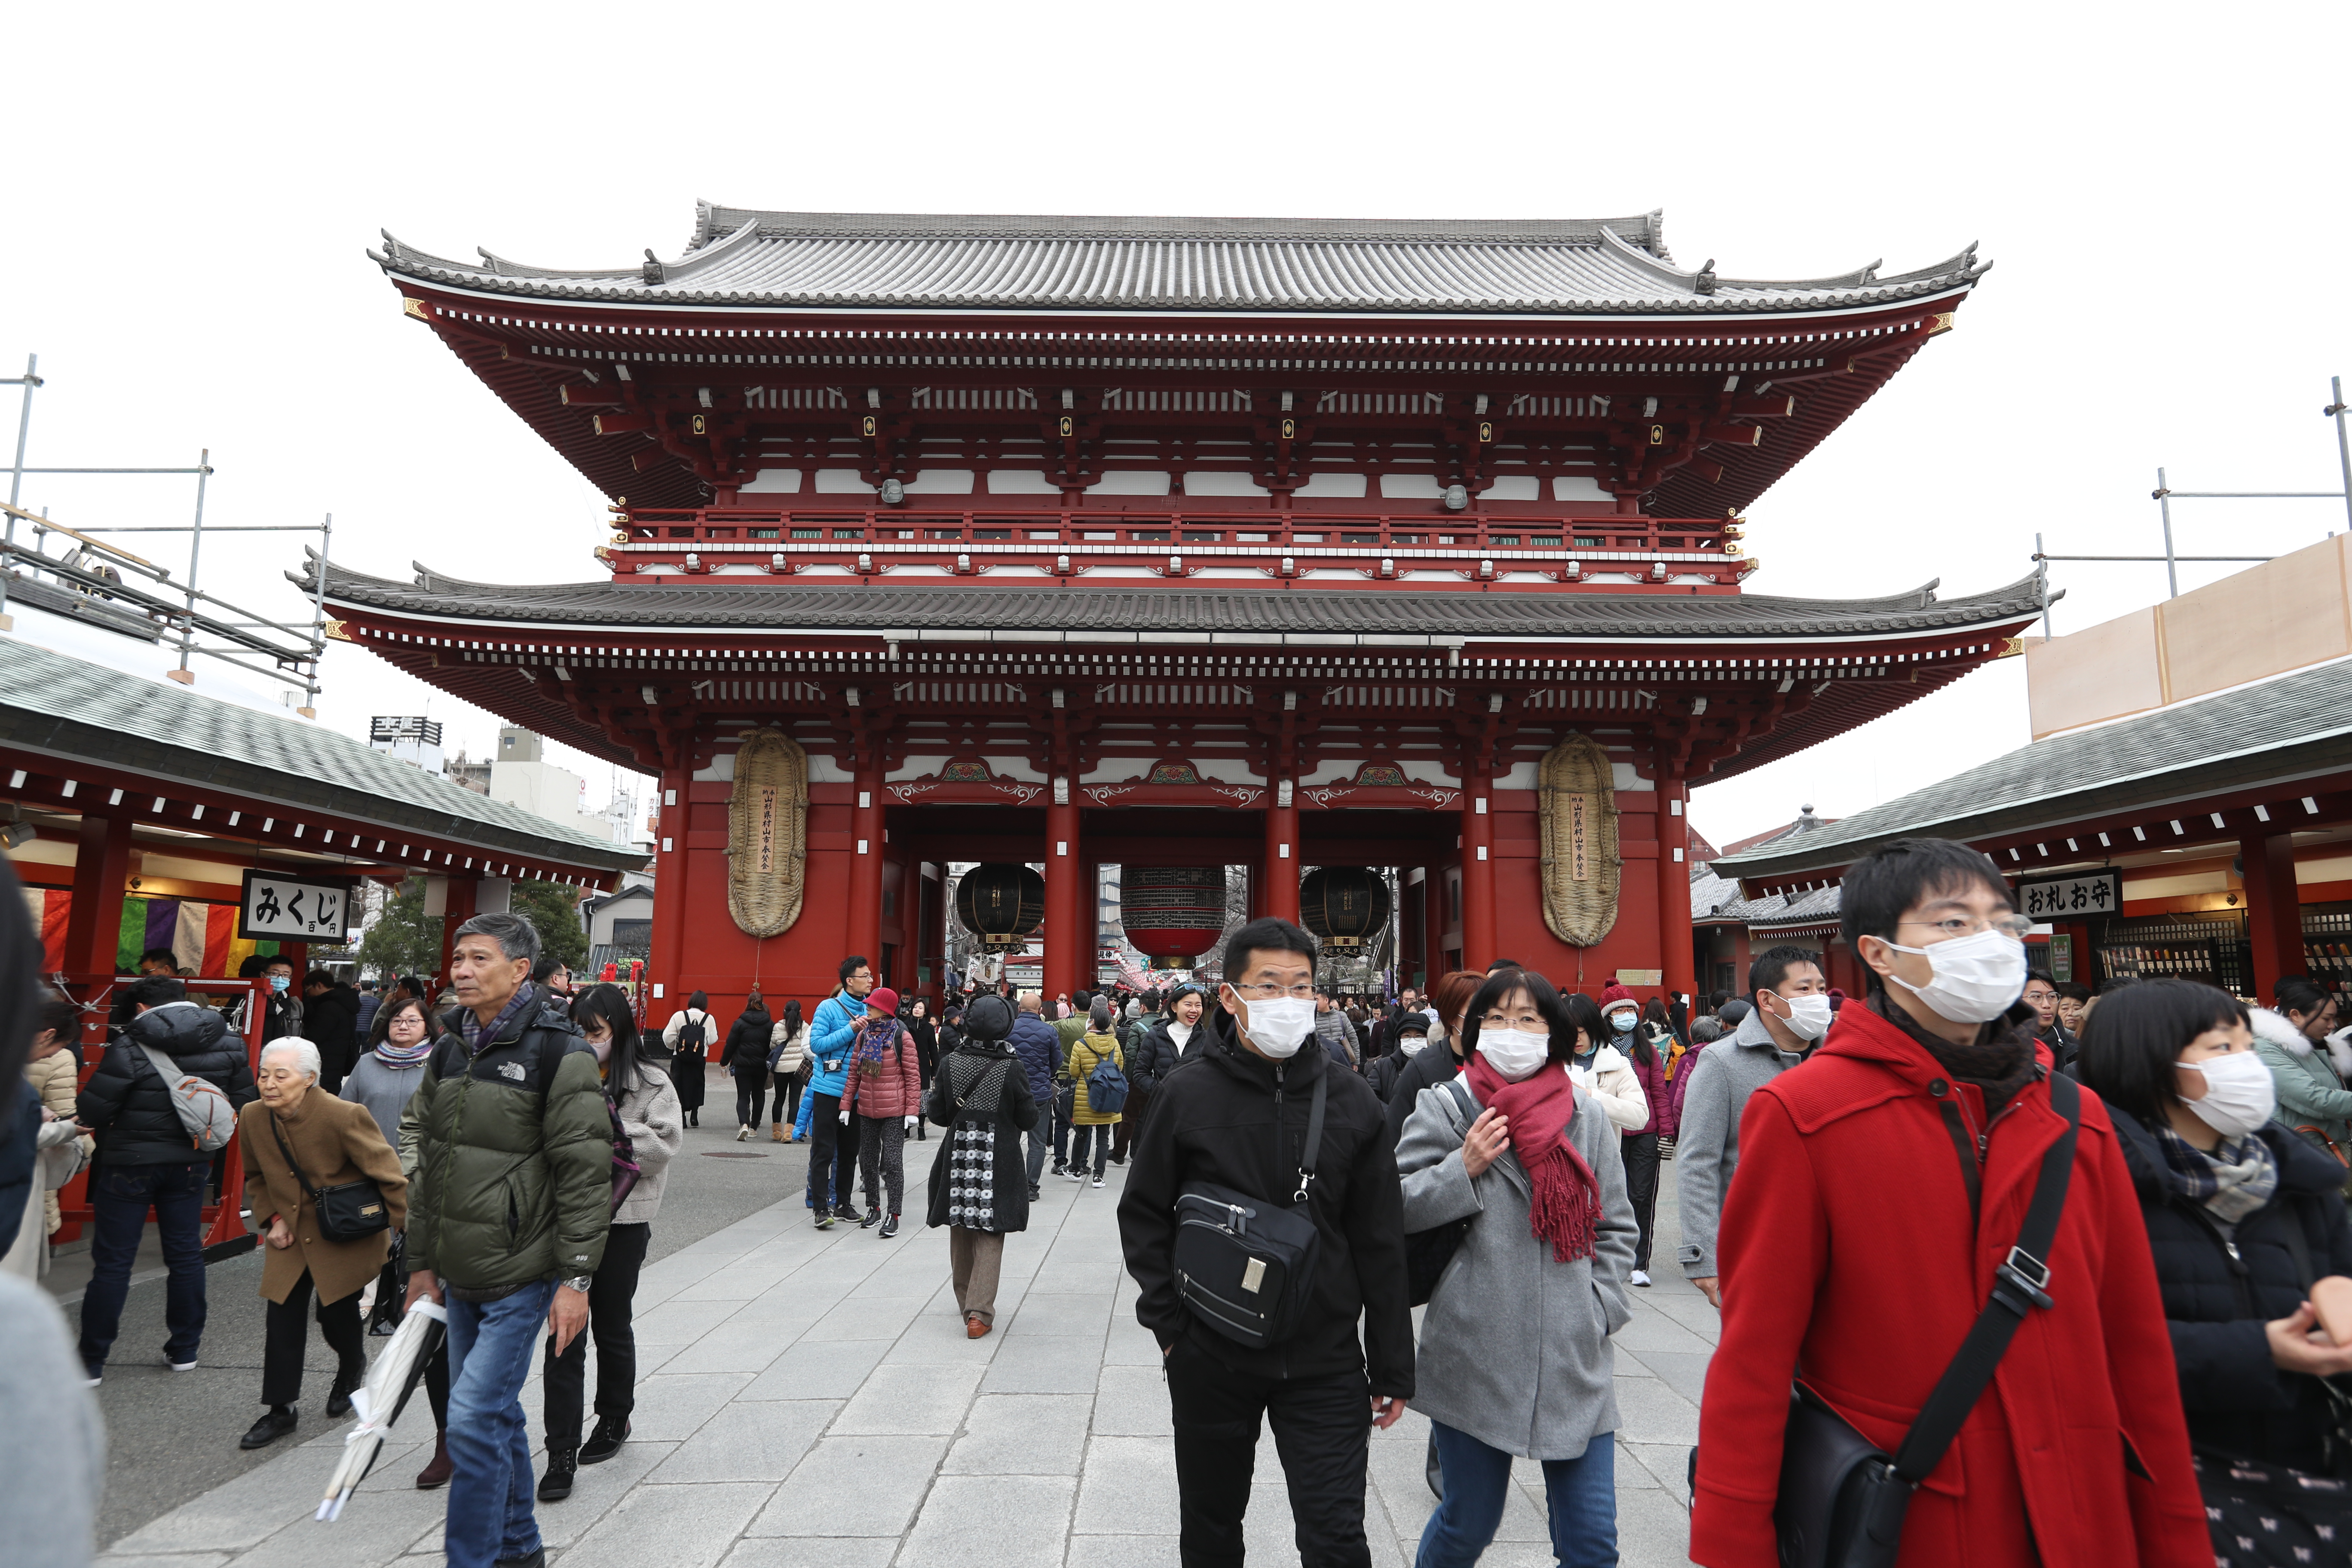 Entrada del templo budista Sensoji, el recinto más antiguo de Tokyo, en Japón. (Foto Prensa Libre: Daniel Guillén Flores)